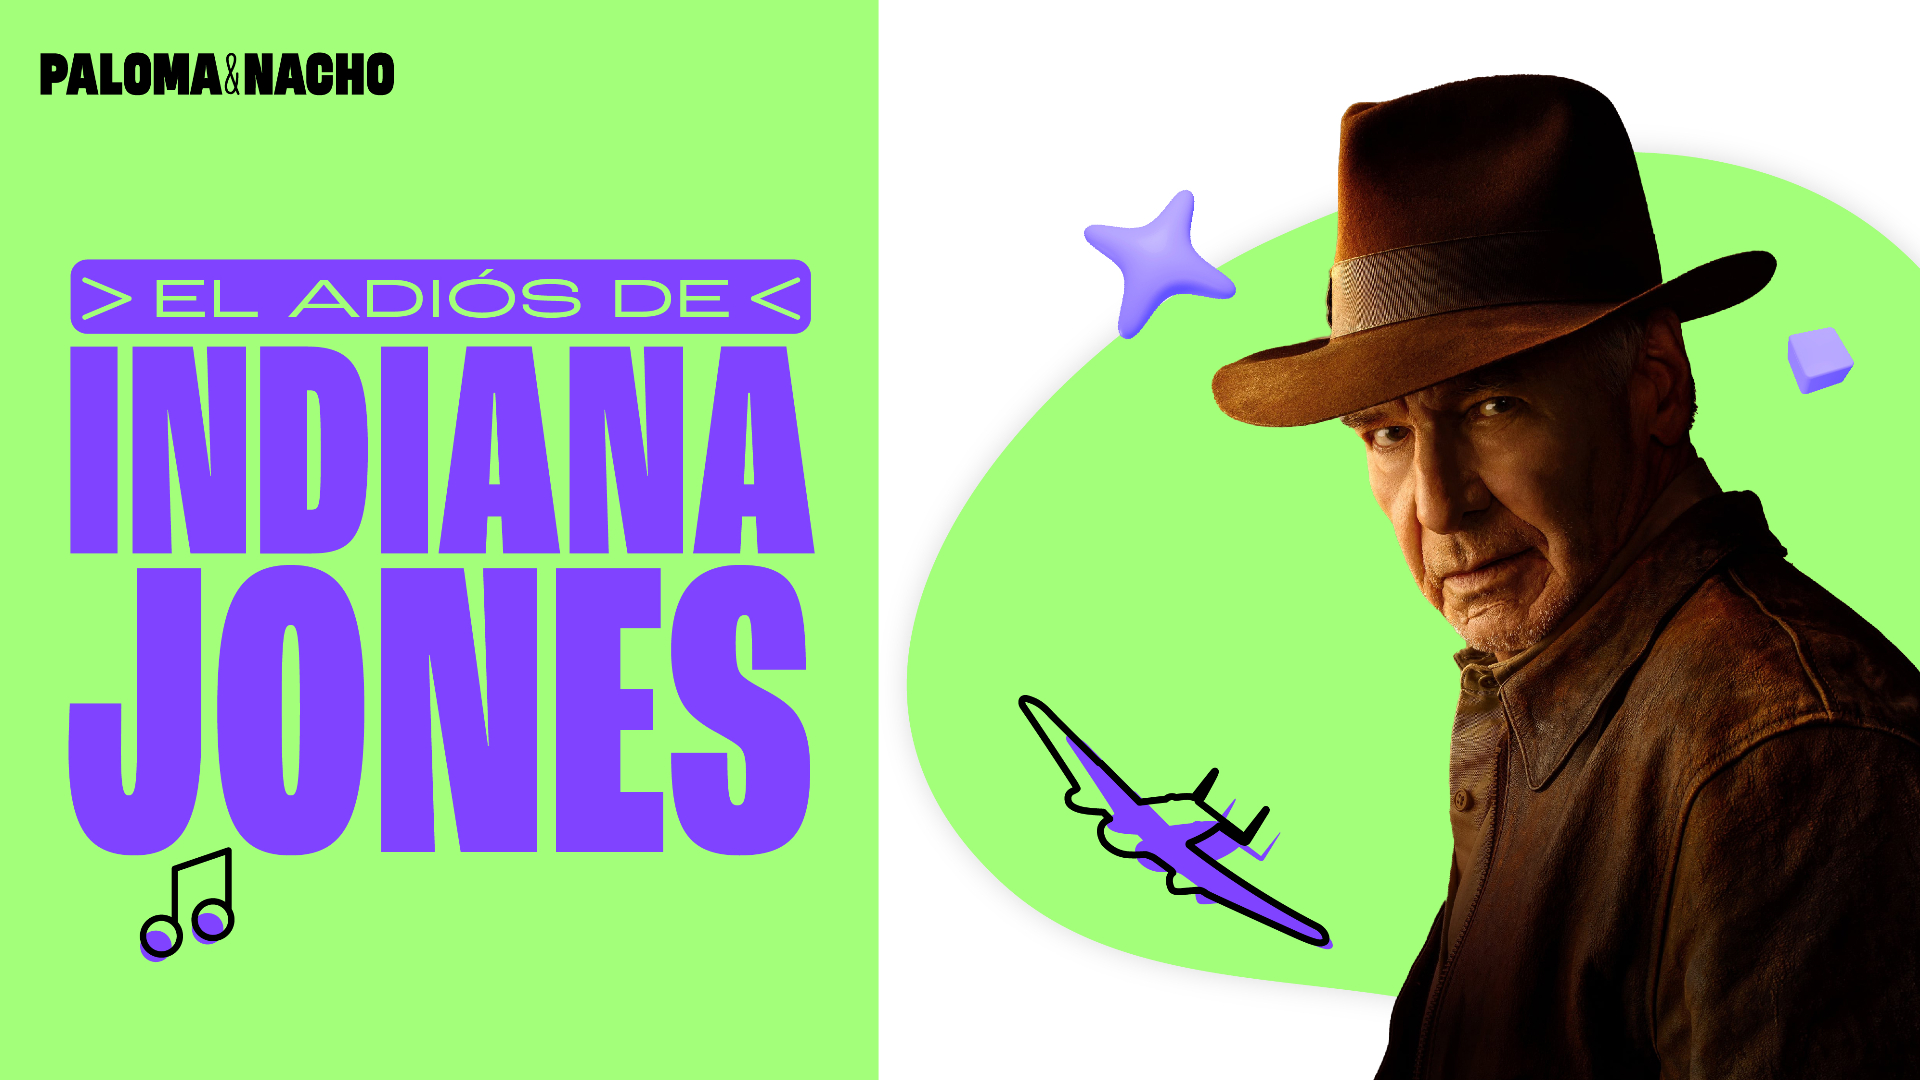 El adiós de Indiana Jones 5